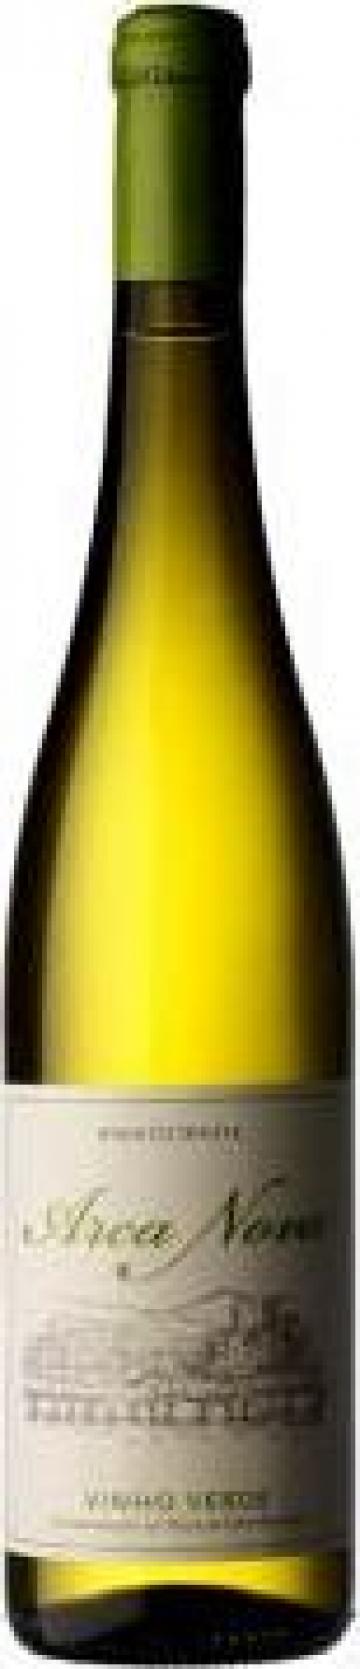 Vin Vinho Verde Branco Arca Nova 750 ml de la Portugal Trading